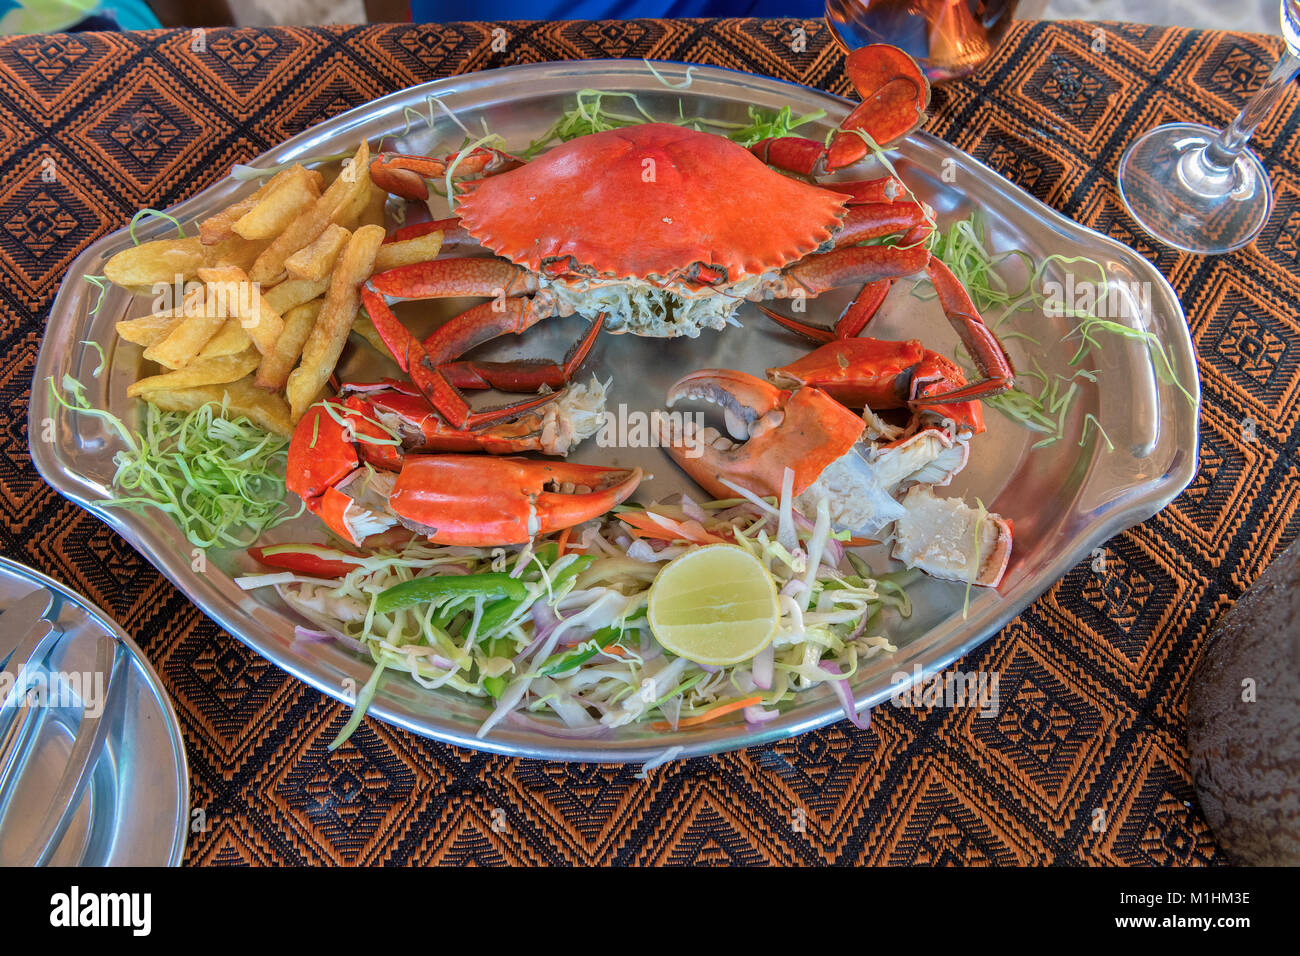 Grandes cangrejos y verdura en el restaurante de la playa, GOA, India. Foto de stock